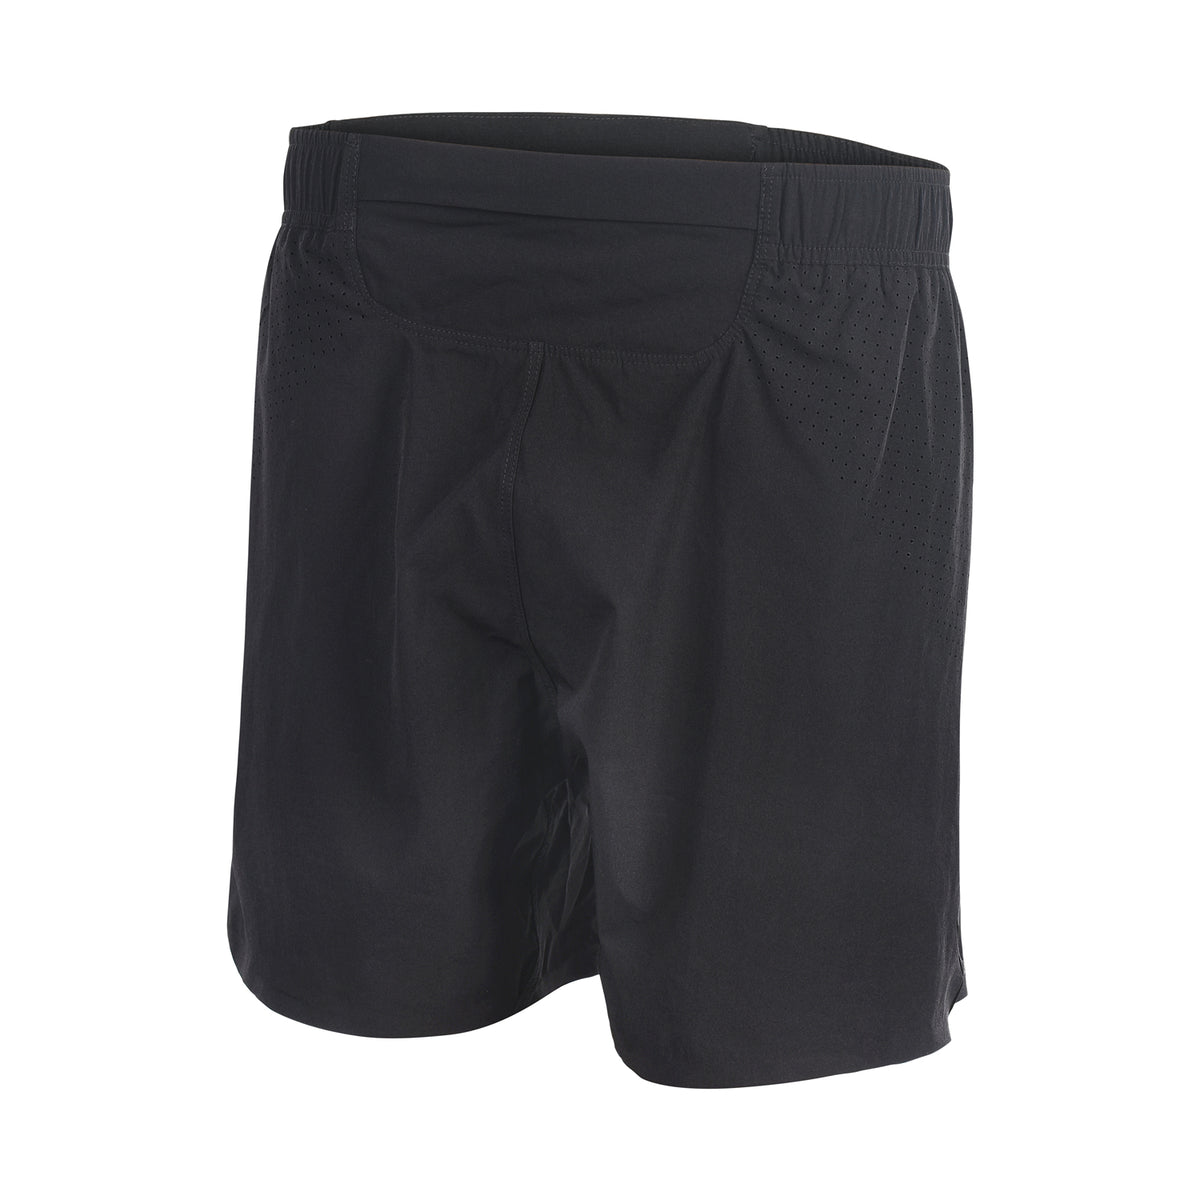 Men's workout shorts "Sandbech" - IAM3F